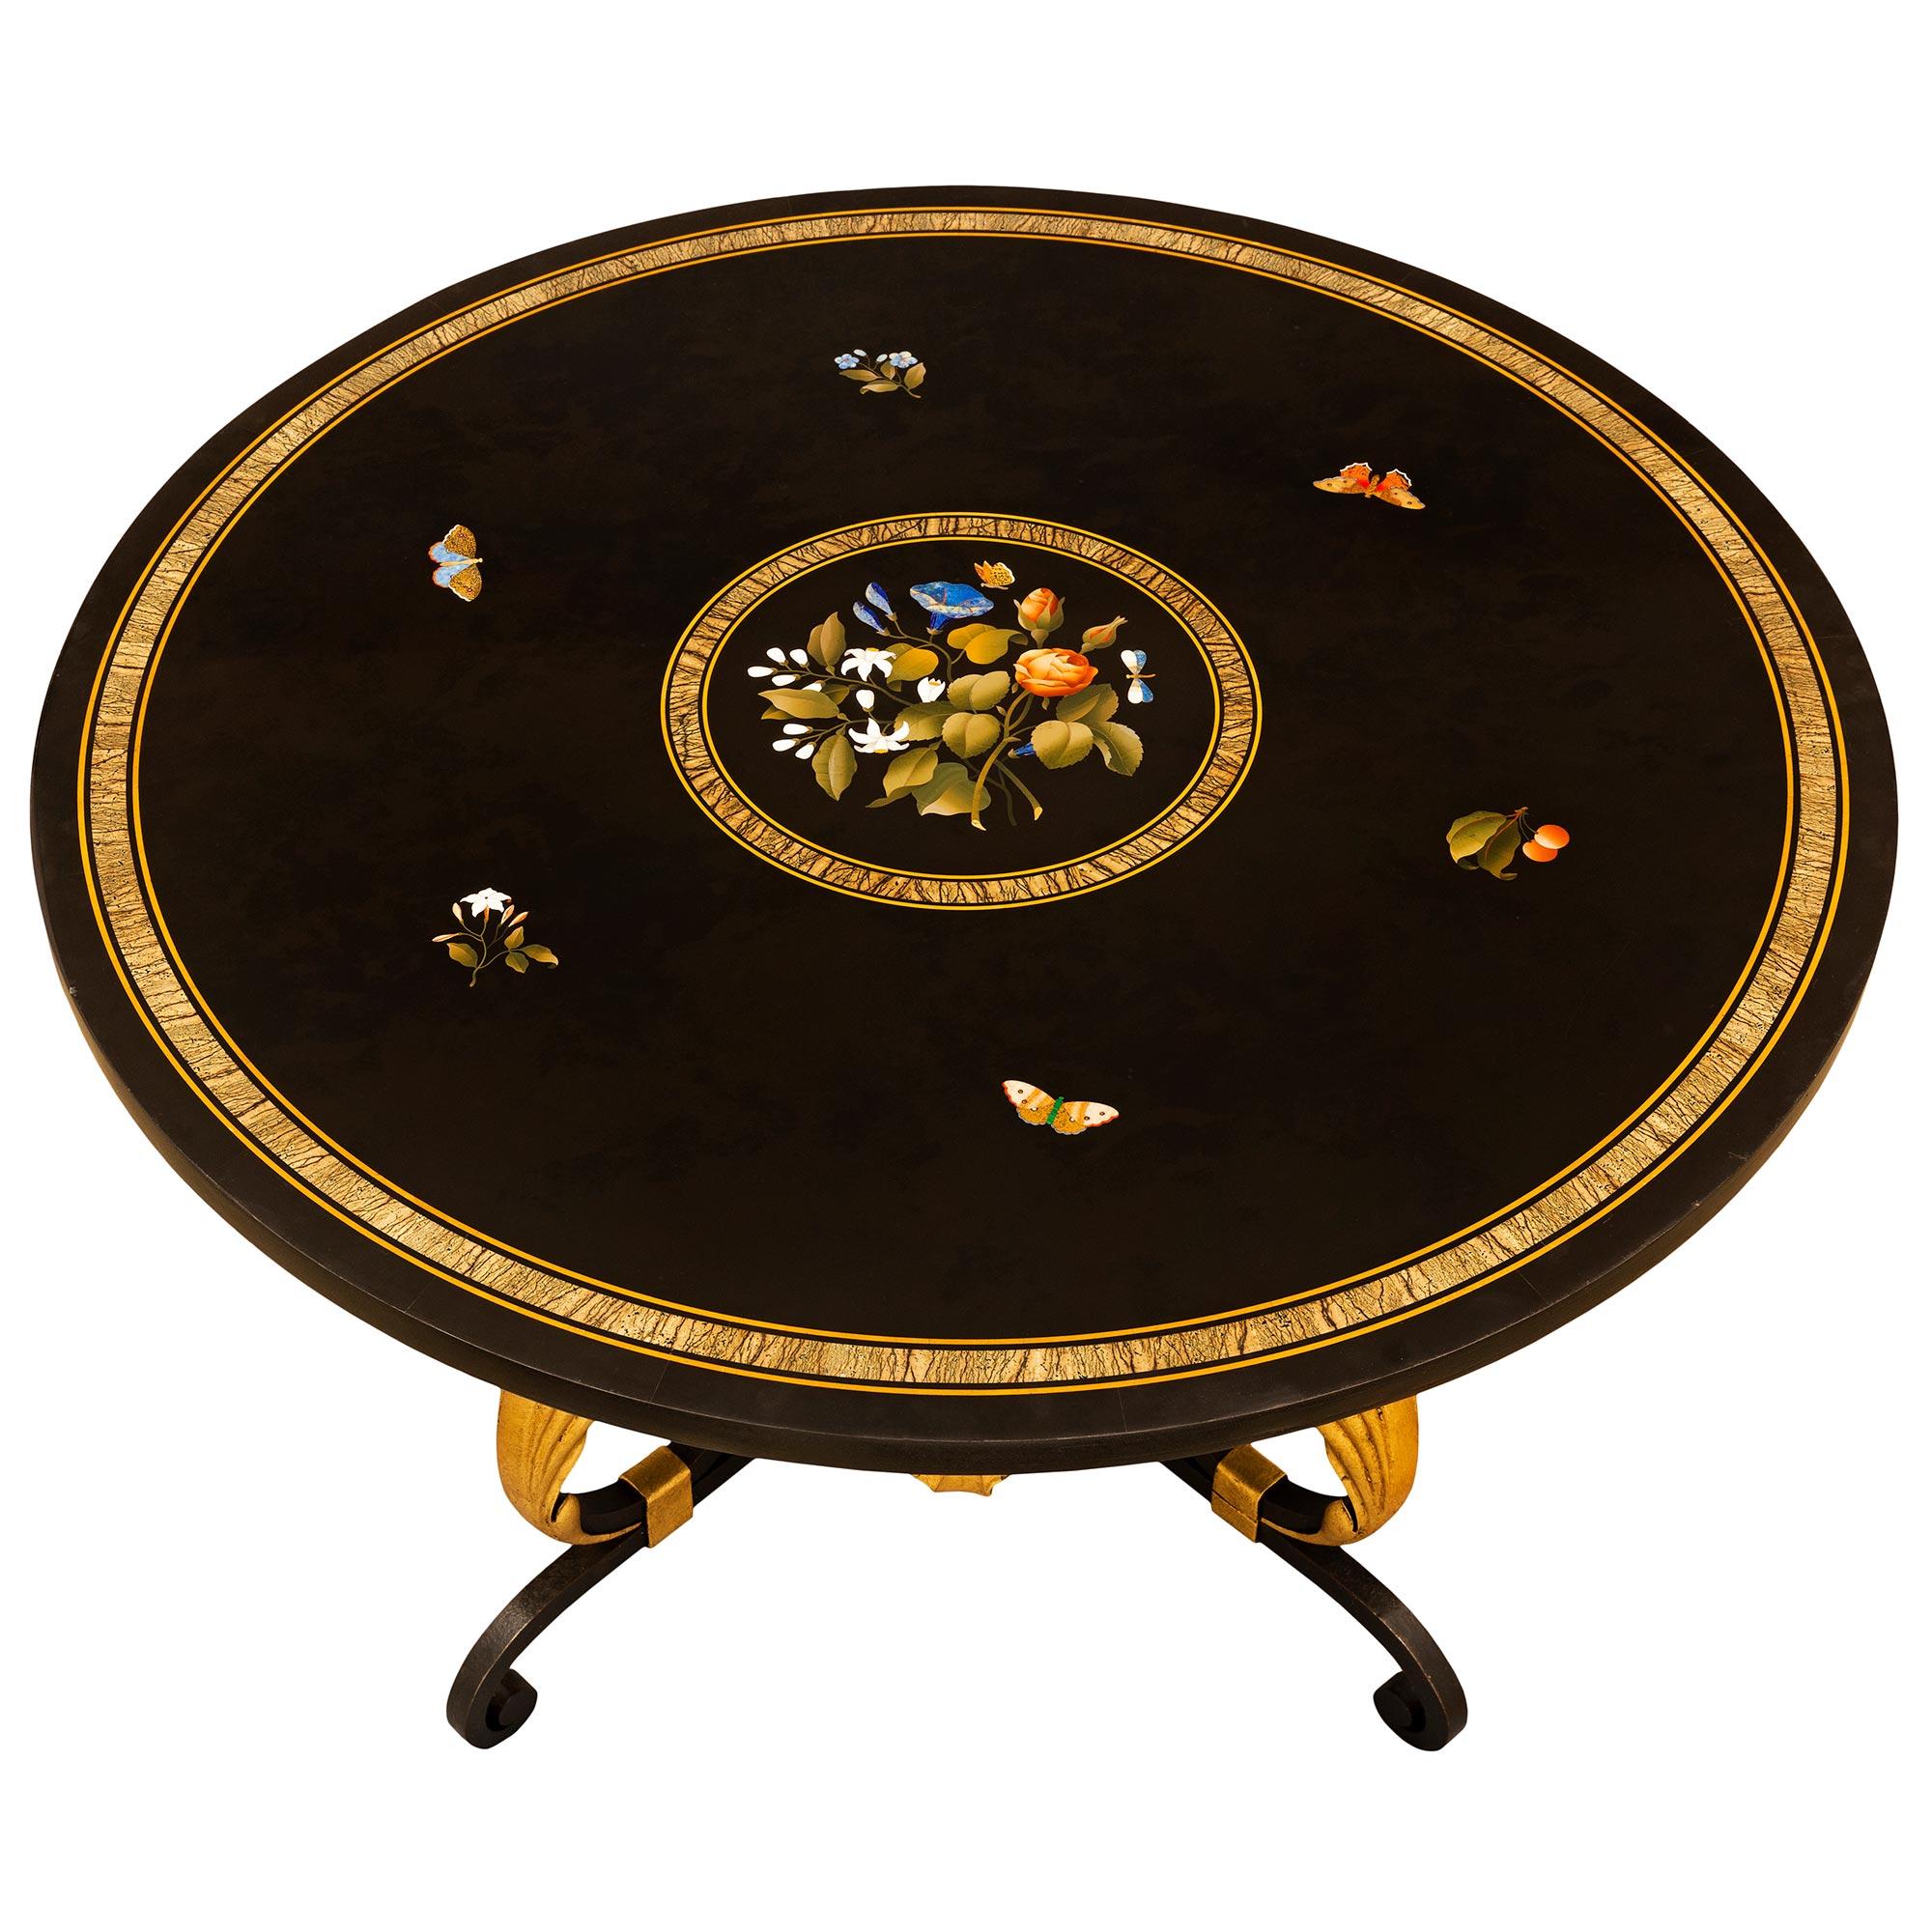 Superbe table de cocktail extrêmement décorative en fer forgé, métal doré et marbre Pietra Dura, datant du XIXe siècle. La table circulaire est surélevée par une saisissante base en fer forgé avec de magnifiques motifs à volutes et d'exceptionnels